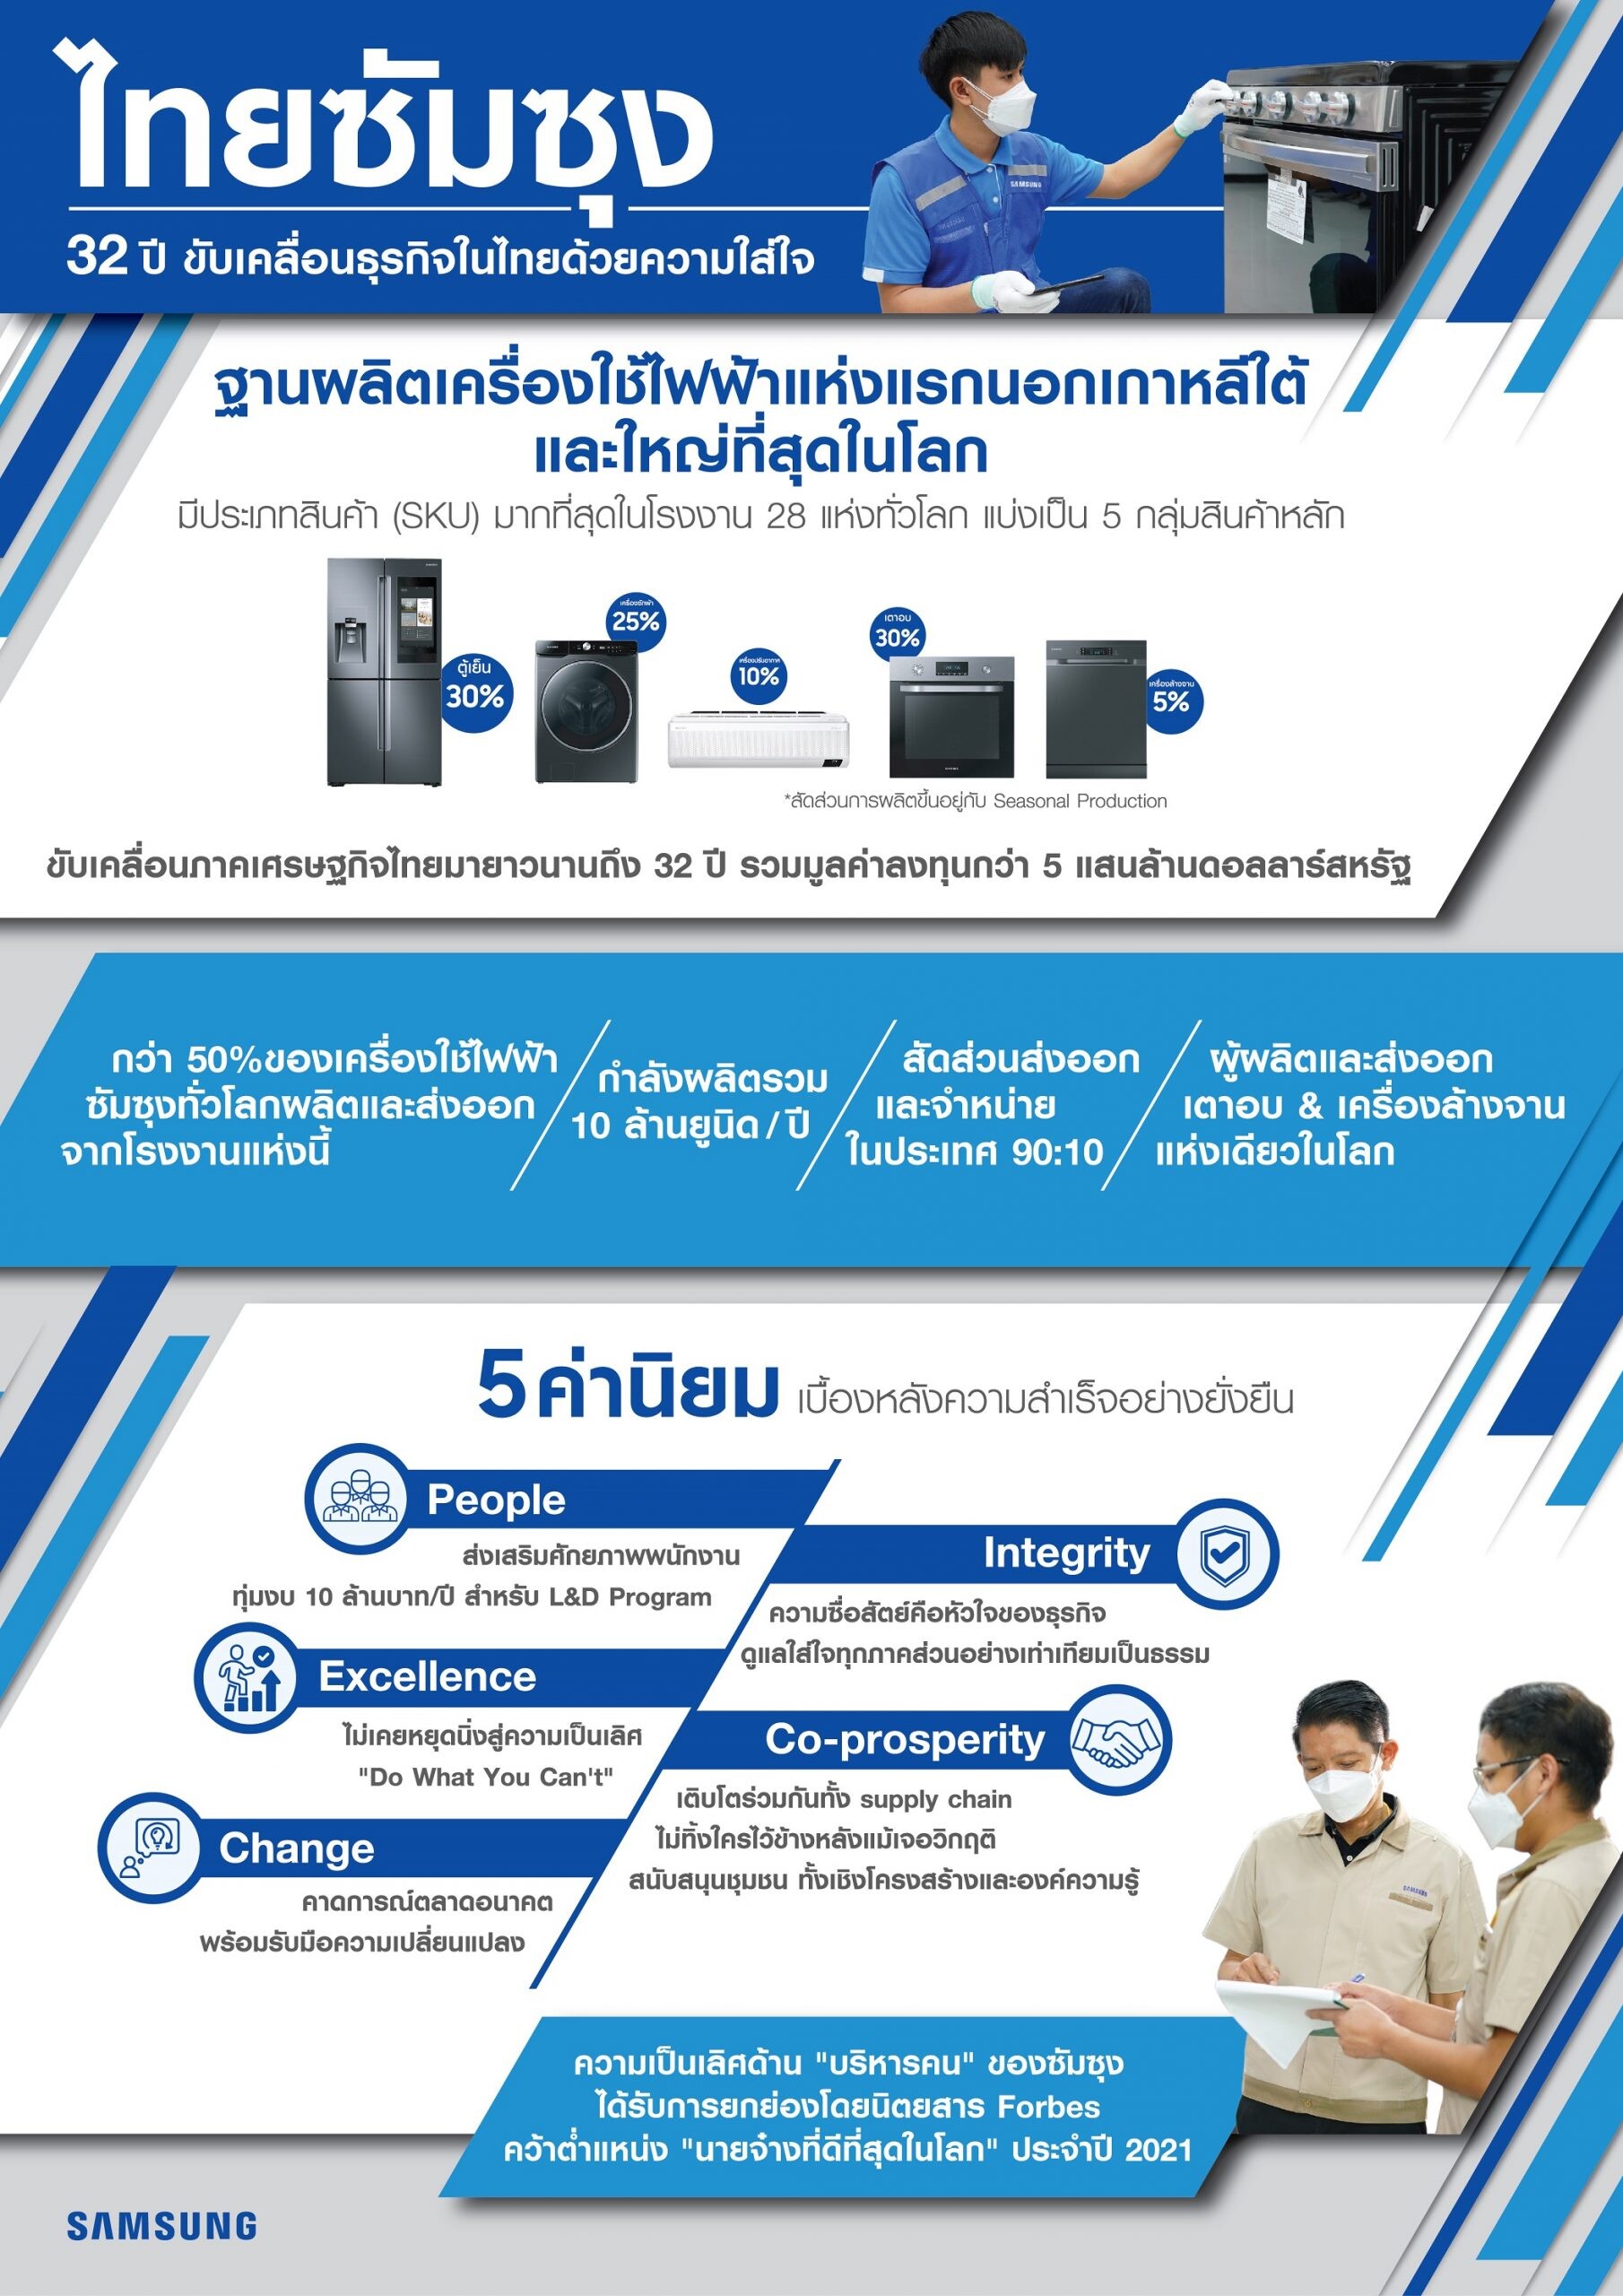 32 ปี "ไทยซัมซุง" เดินหน้าขับเคลื่อนธุรกิจในไทยด้วยความใส่ใจ สู่ฐานการผลิตเครื่องใช้ไฟฟ้าซัมซุงที่ใหญ่สุดในโลก